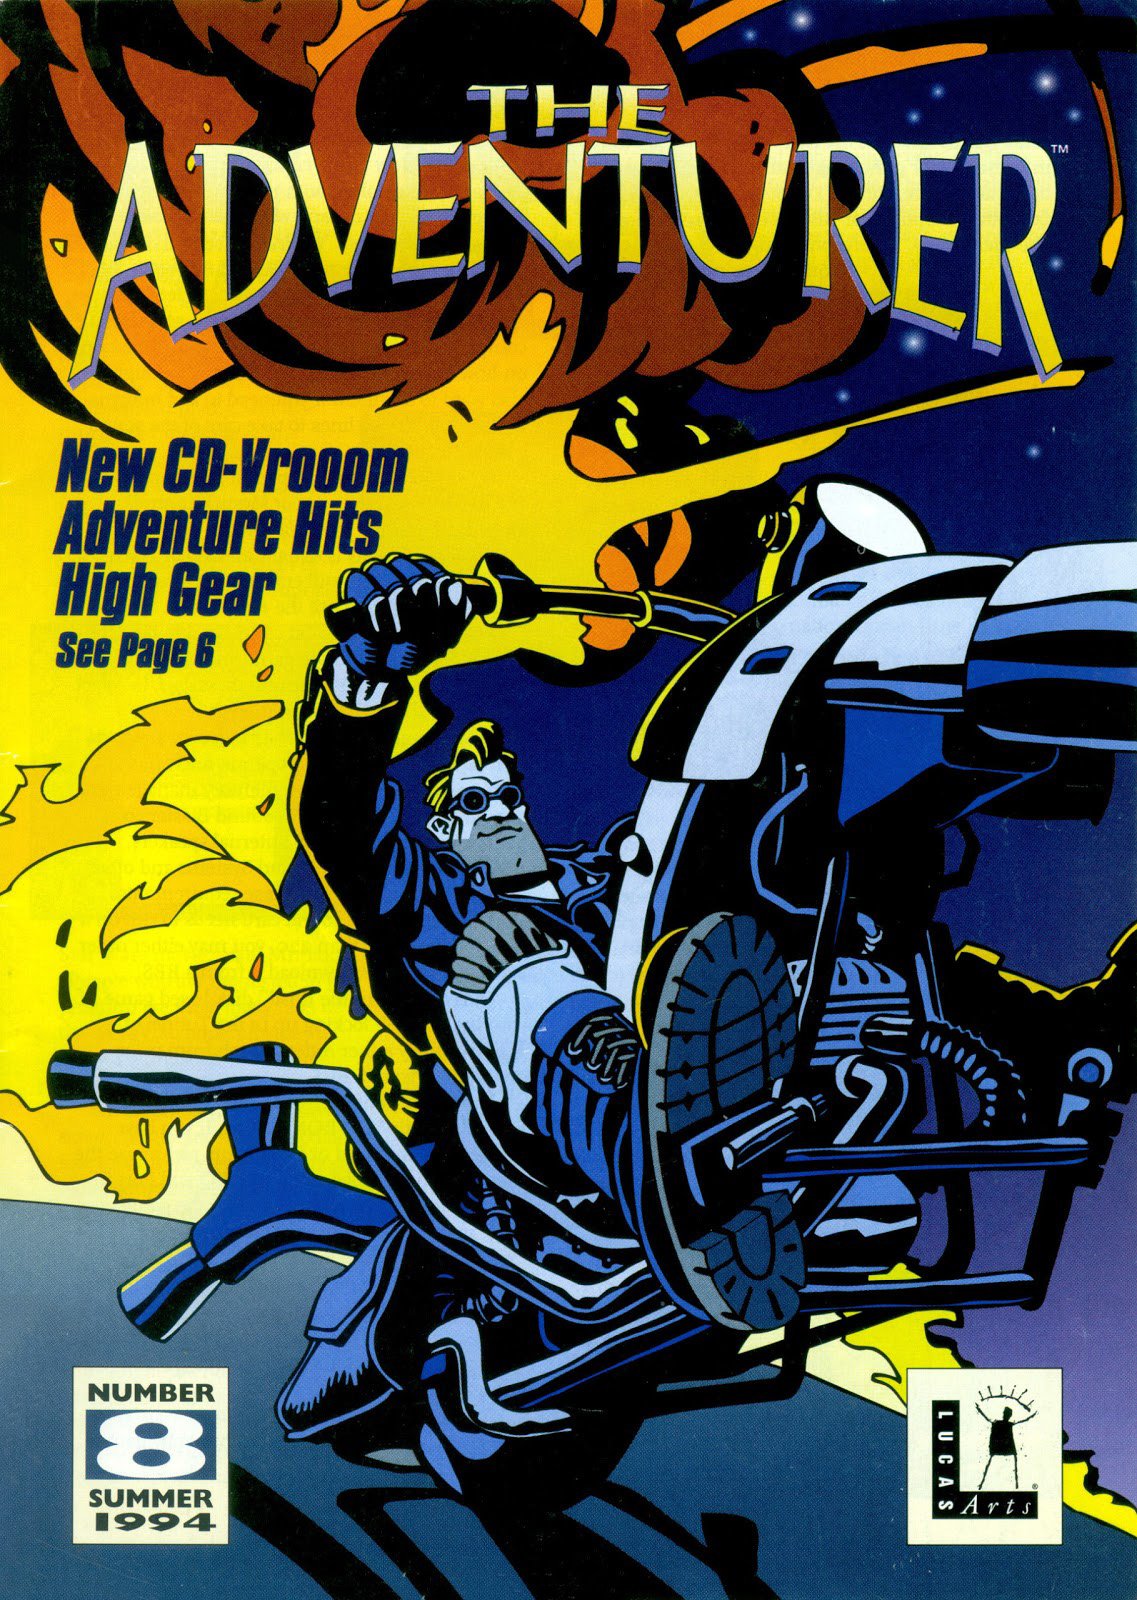 The Adventurer Issue 08 Summer 1994